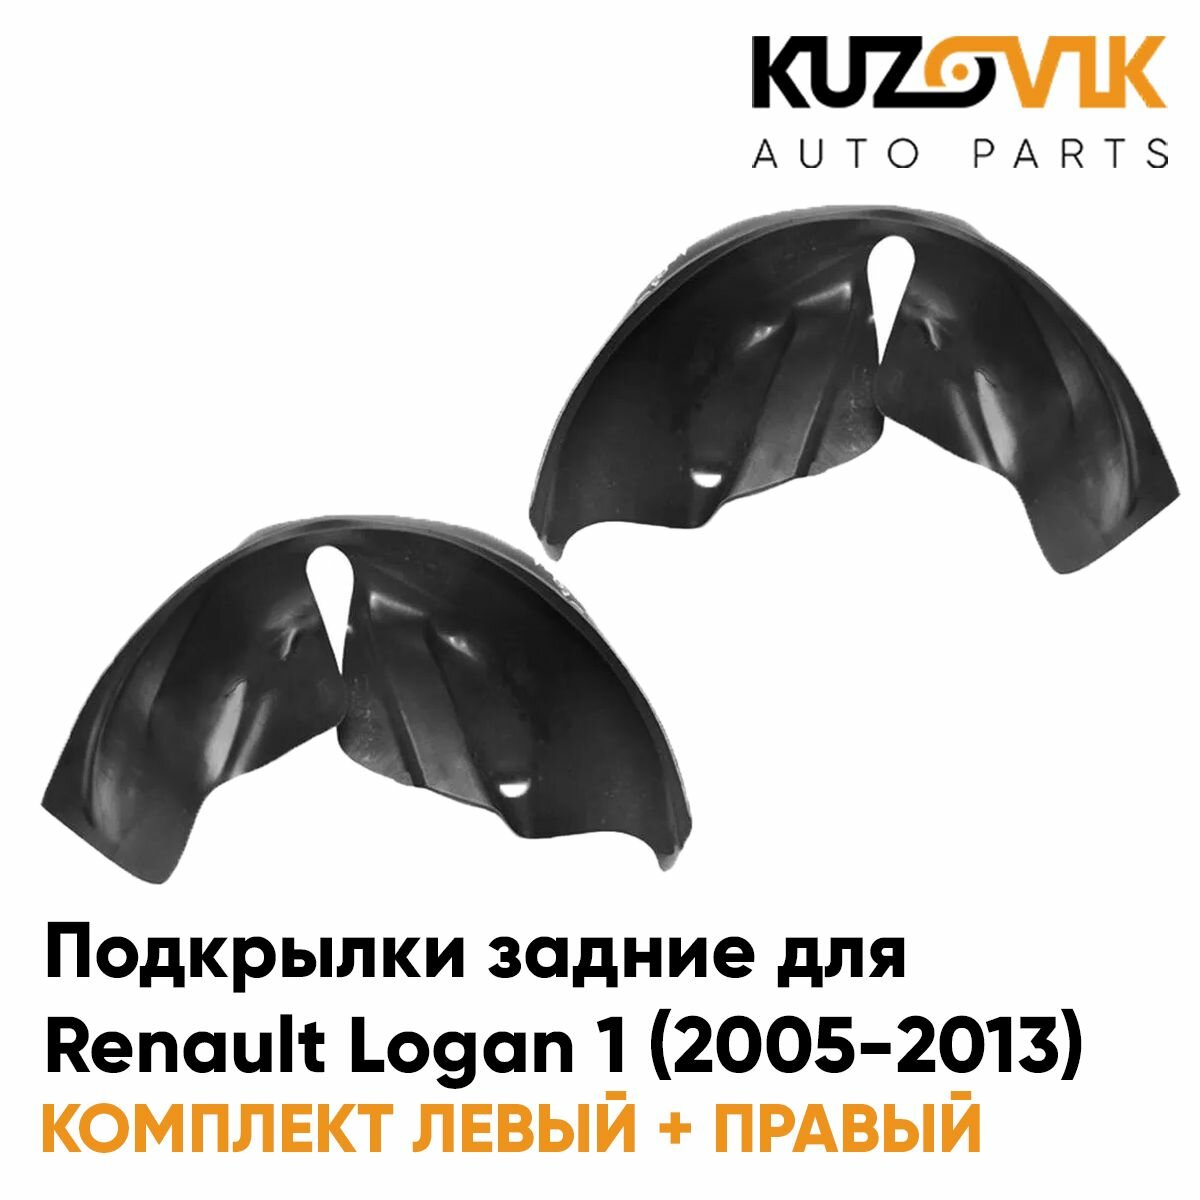 Подкрылки задние для Рено Логан Renault Logan 1 (2005-2013) на всю арку комплект 2 штуки левый+правый, локер, защита крыла